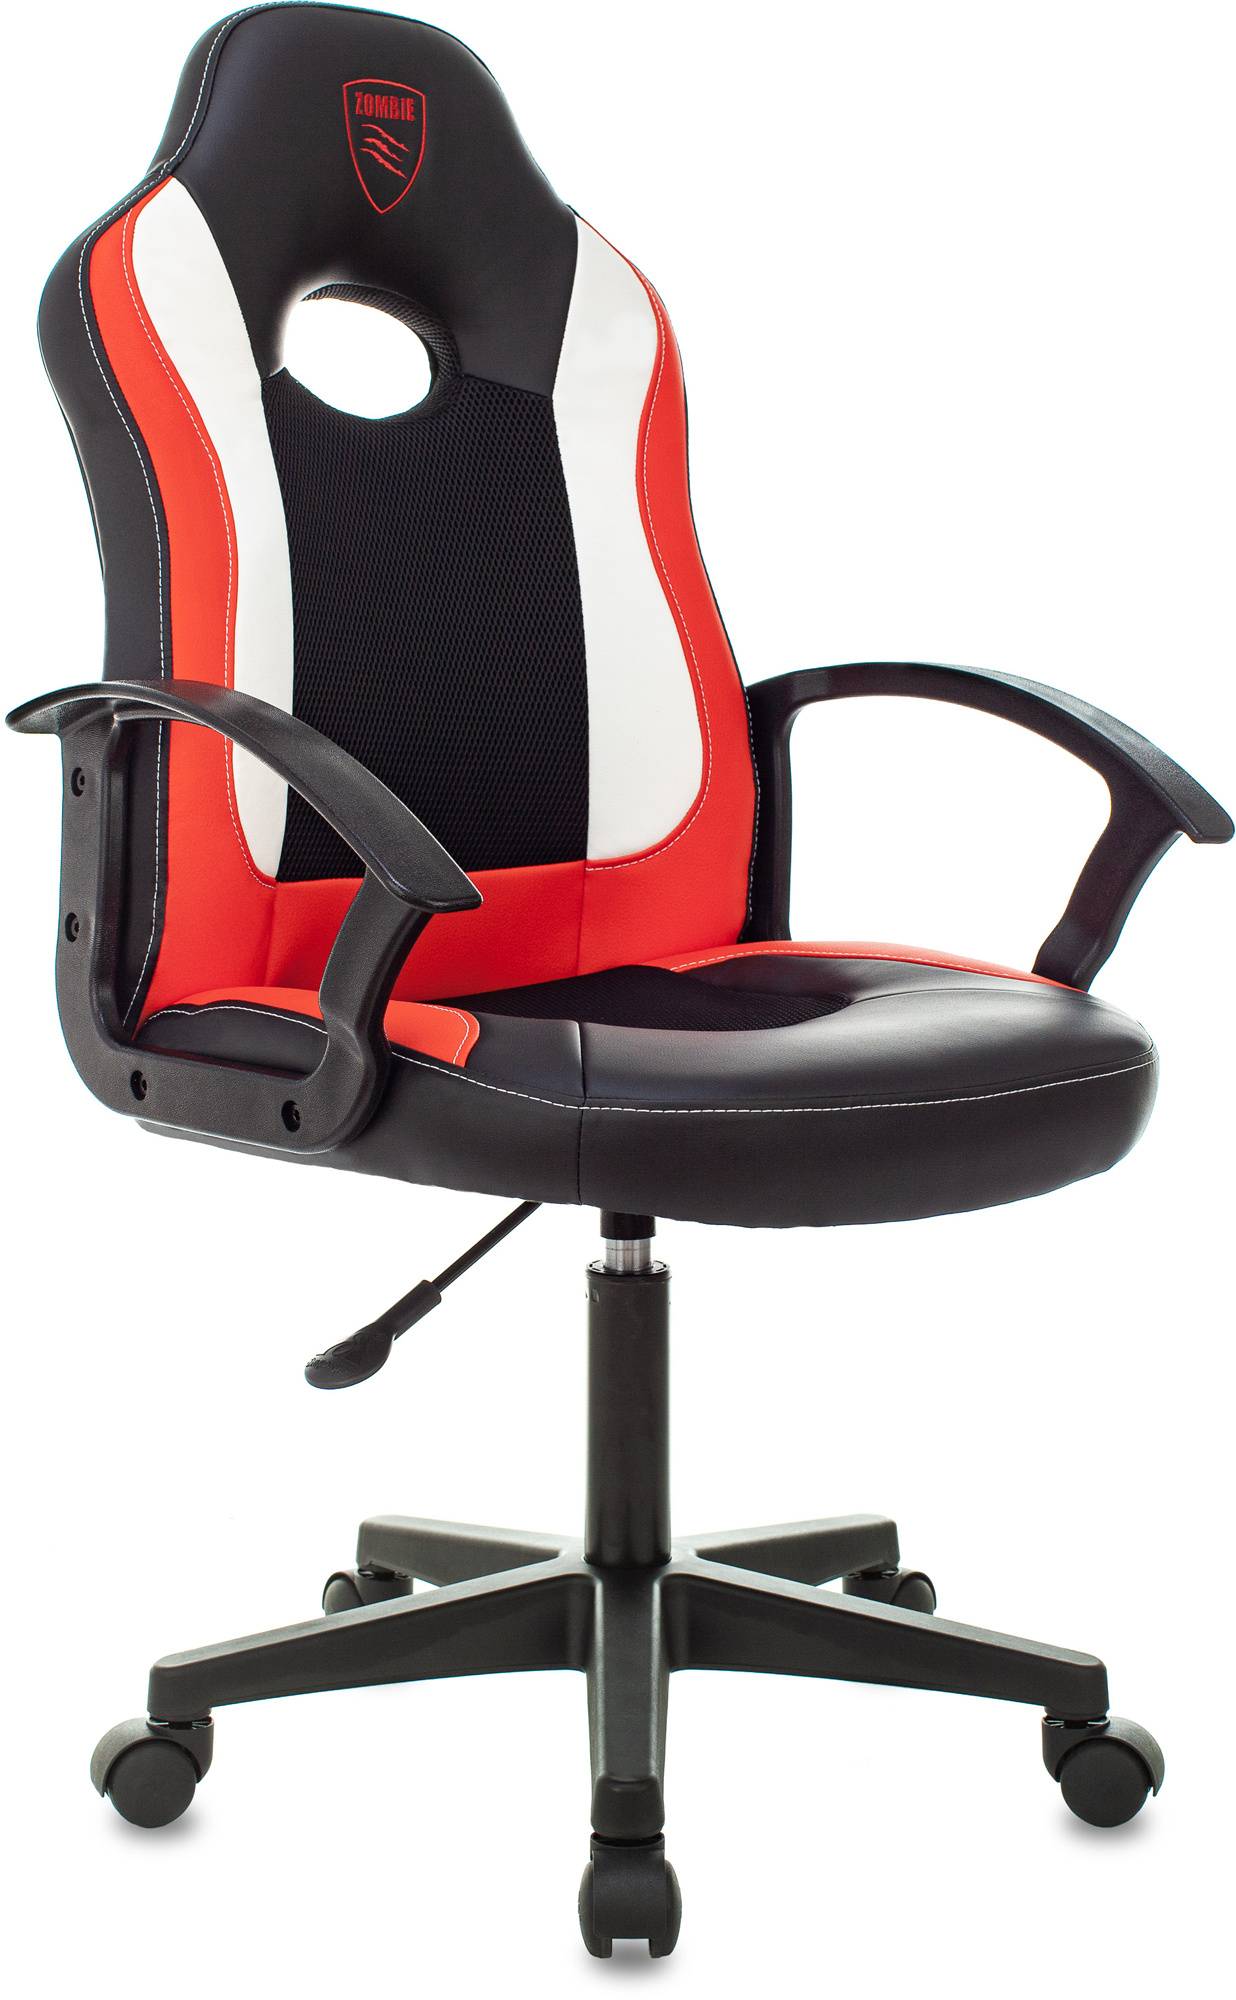 Кресло игровое ZOMBIE 11LT RED черный/красный, текстиль/эко.кожа, крестовина пластик - купить в Pleer.Ru (самовывоз из магазина), цена на Мегамаркет